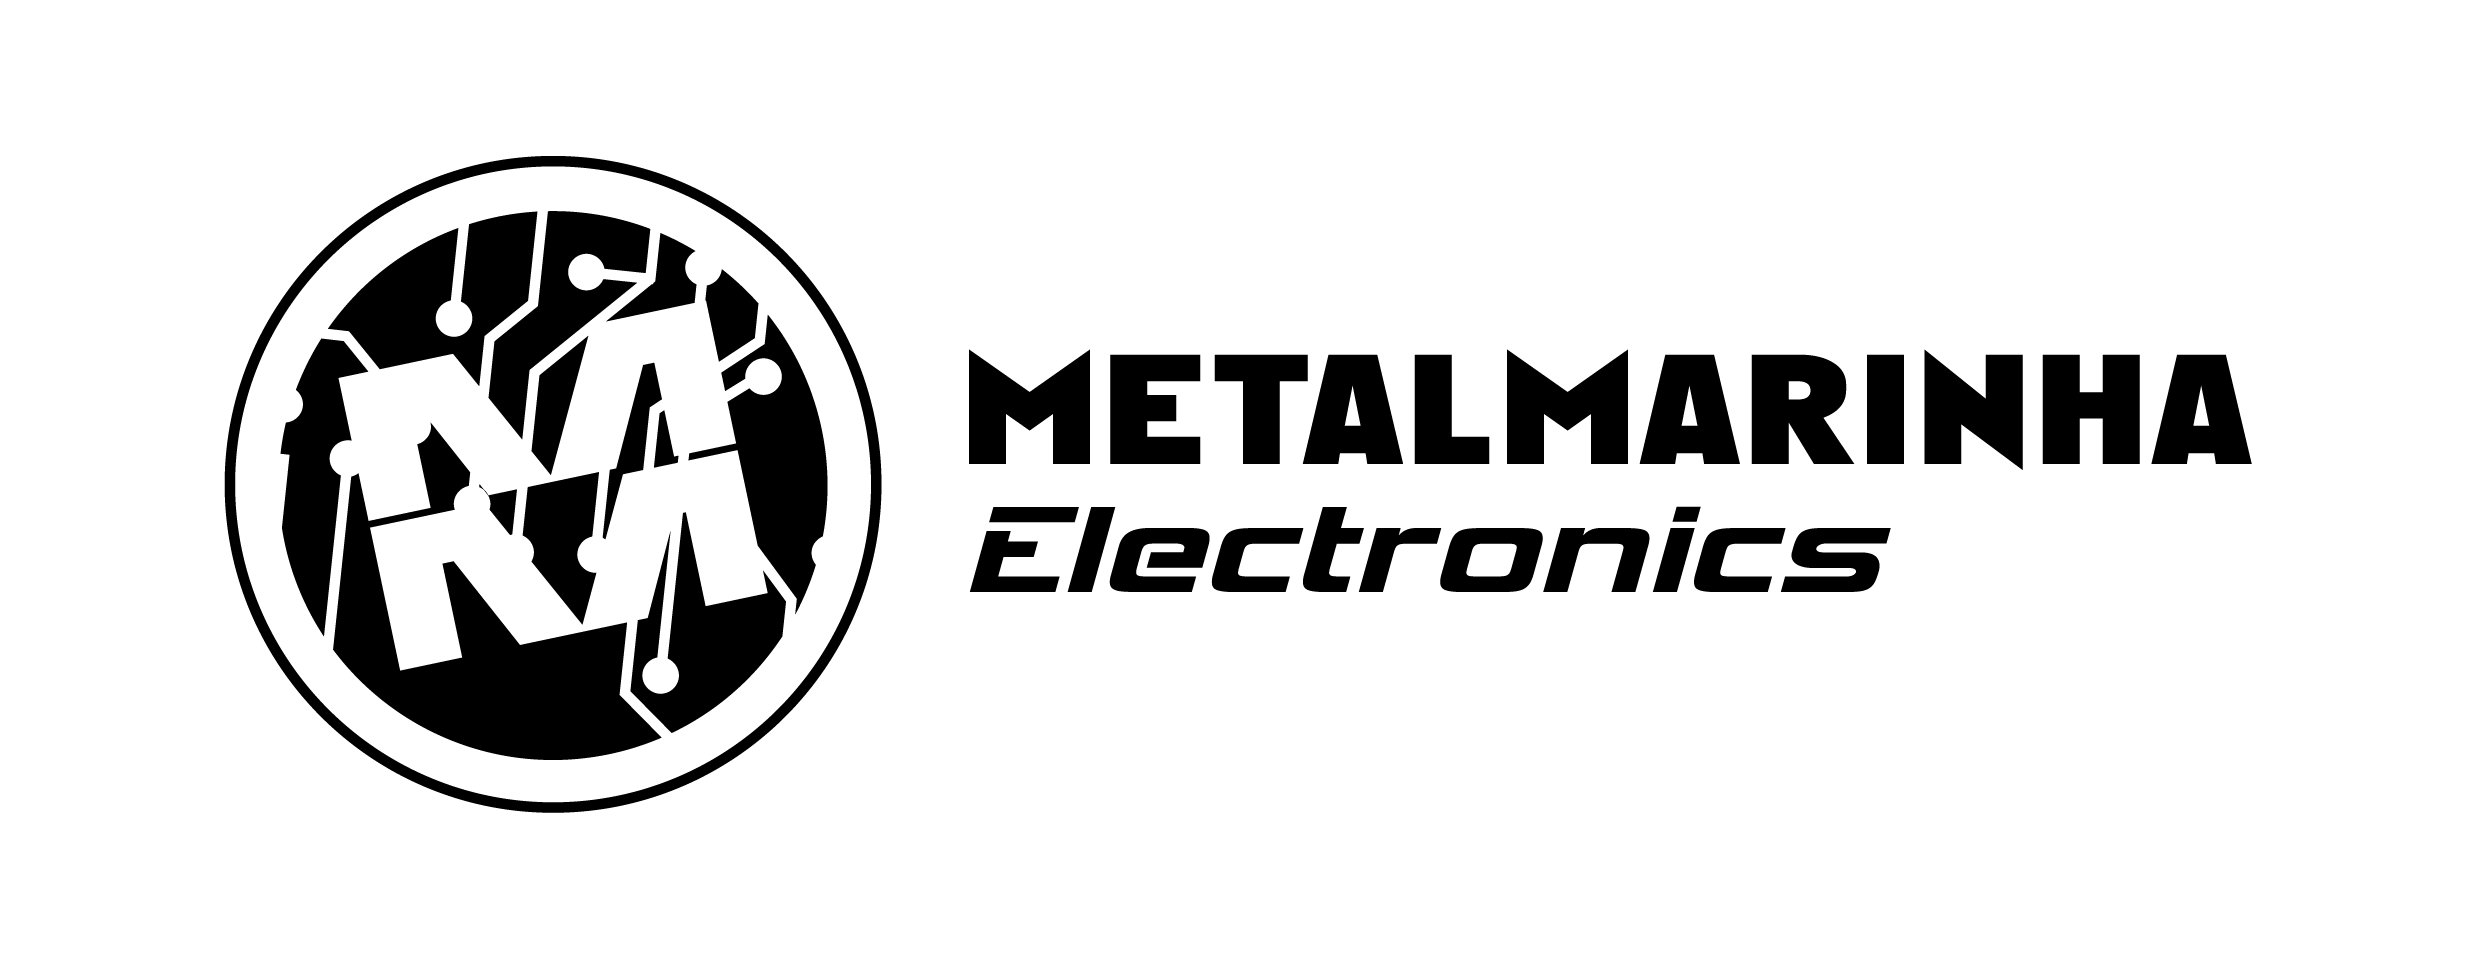 MetalMarinha Electronics